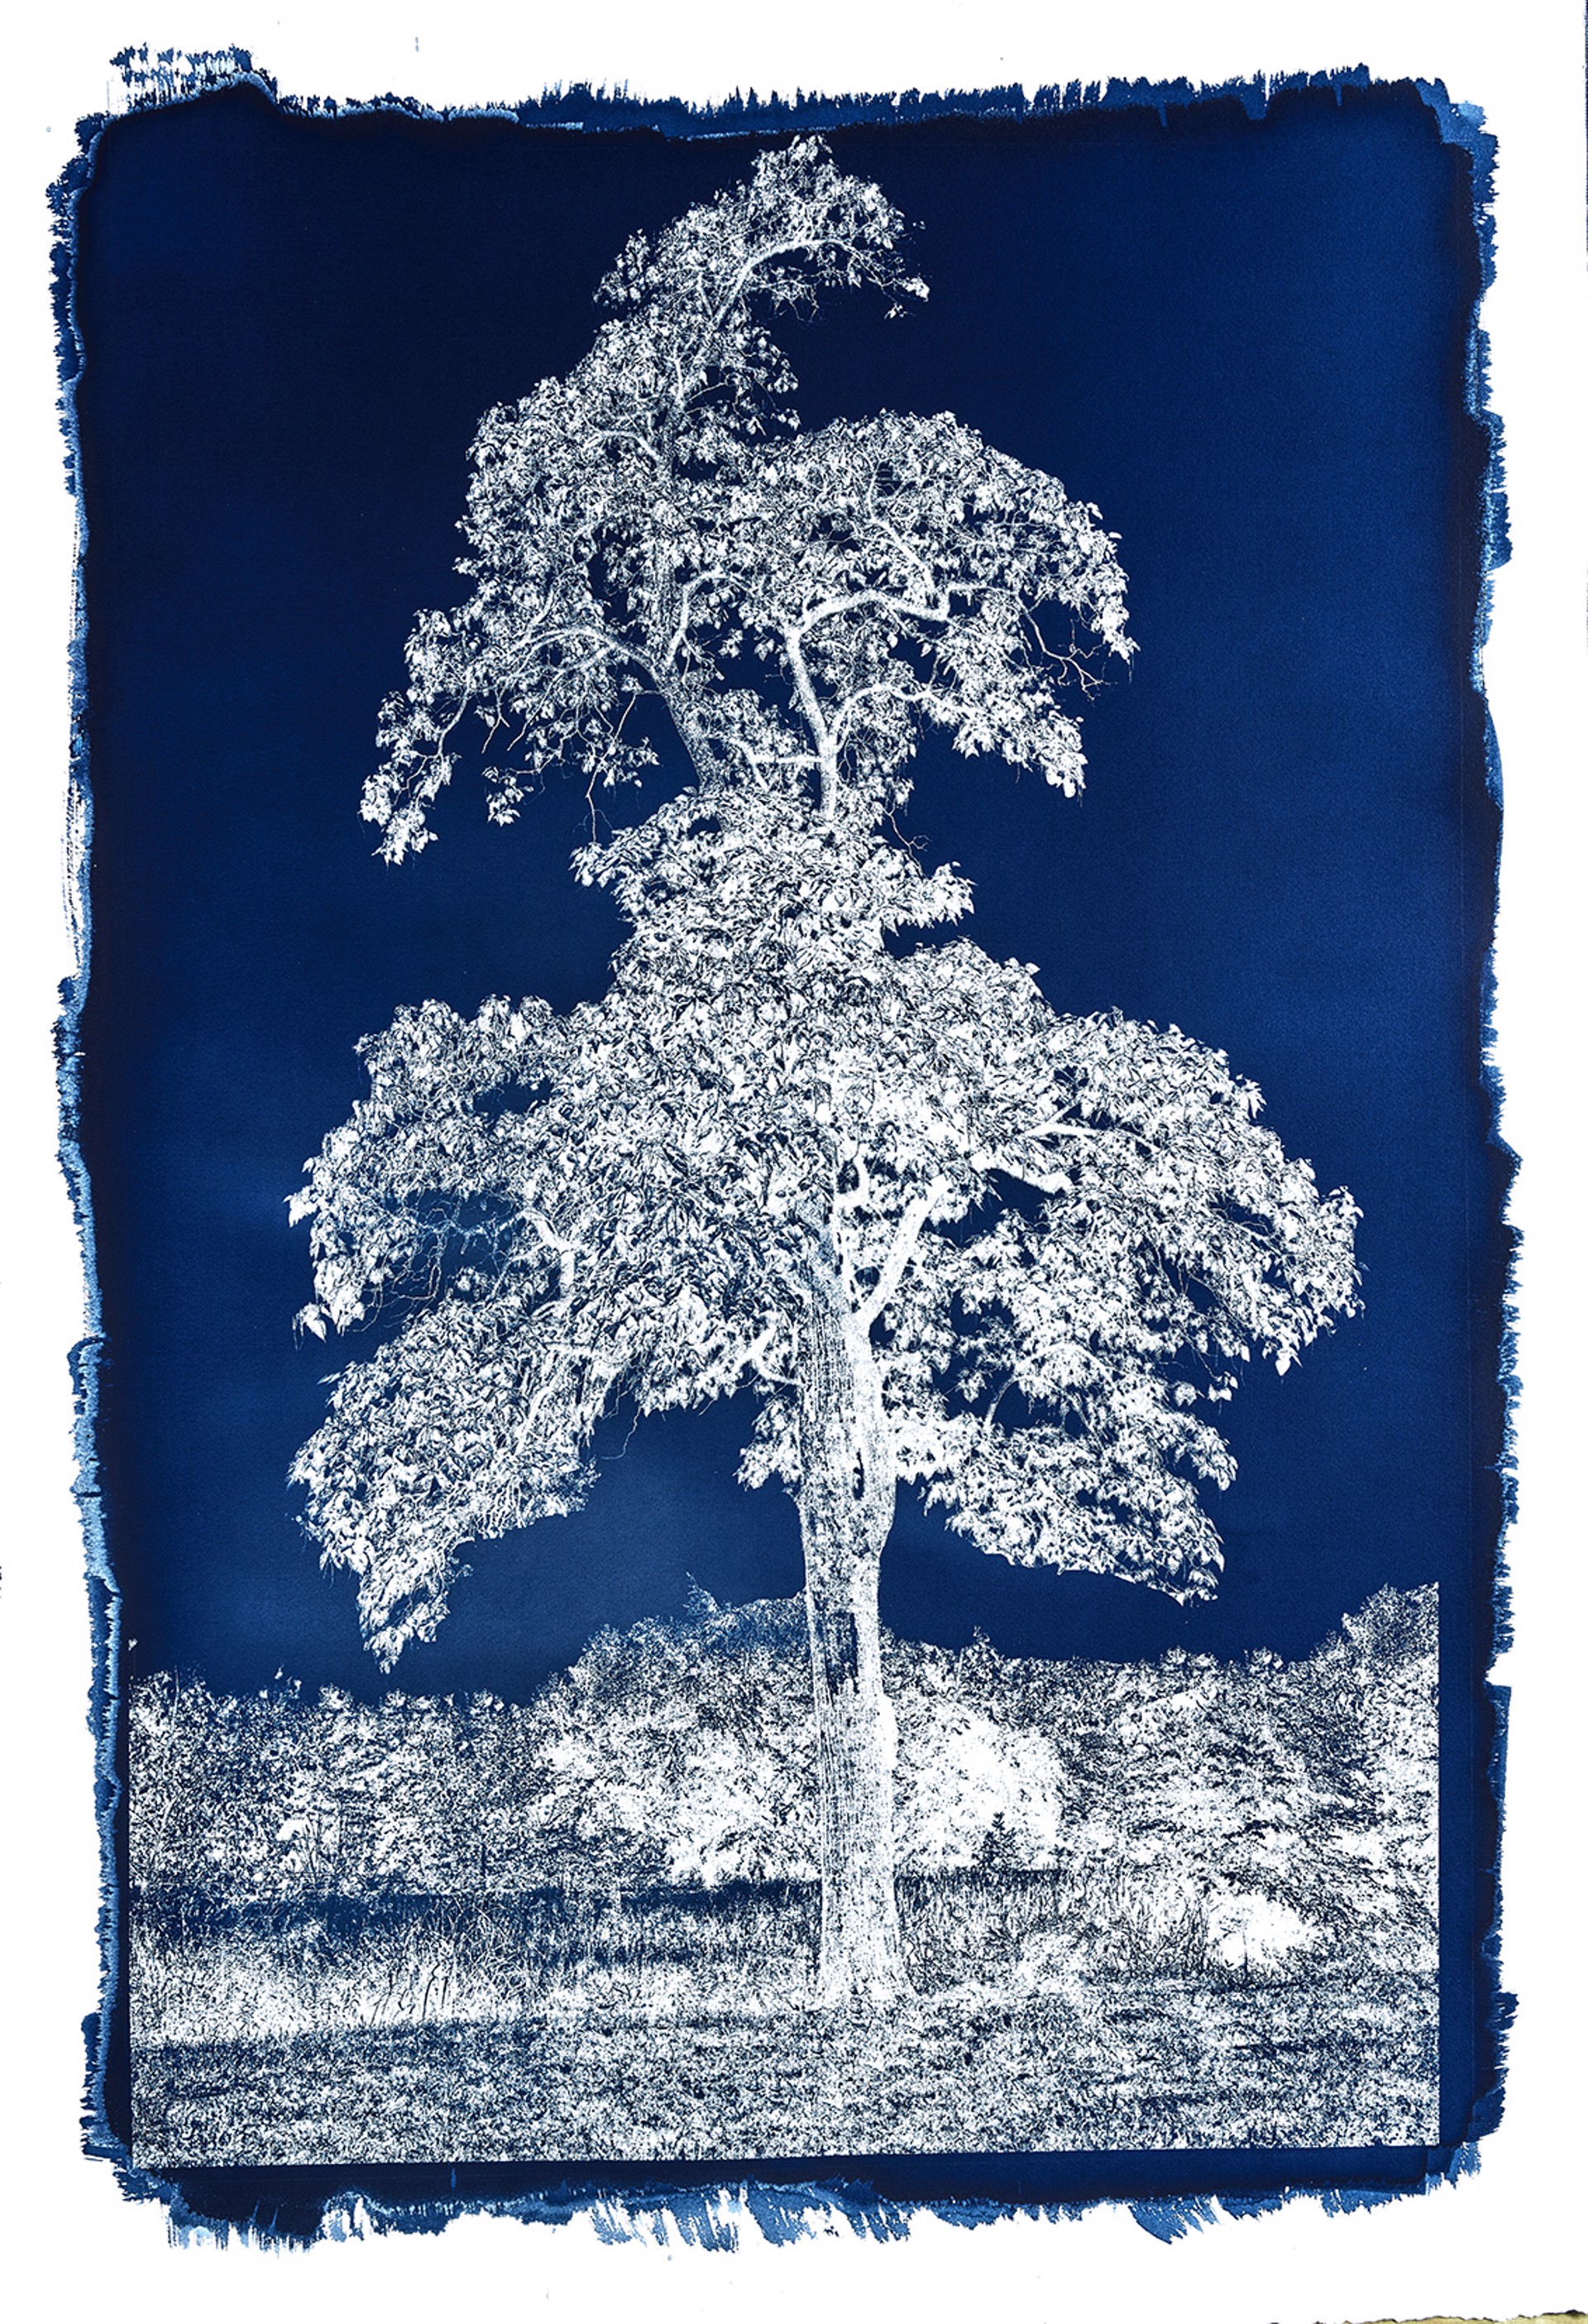 Cyanotype #28 by Michael Eastman